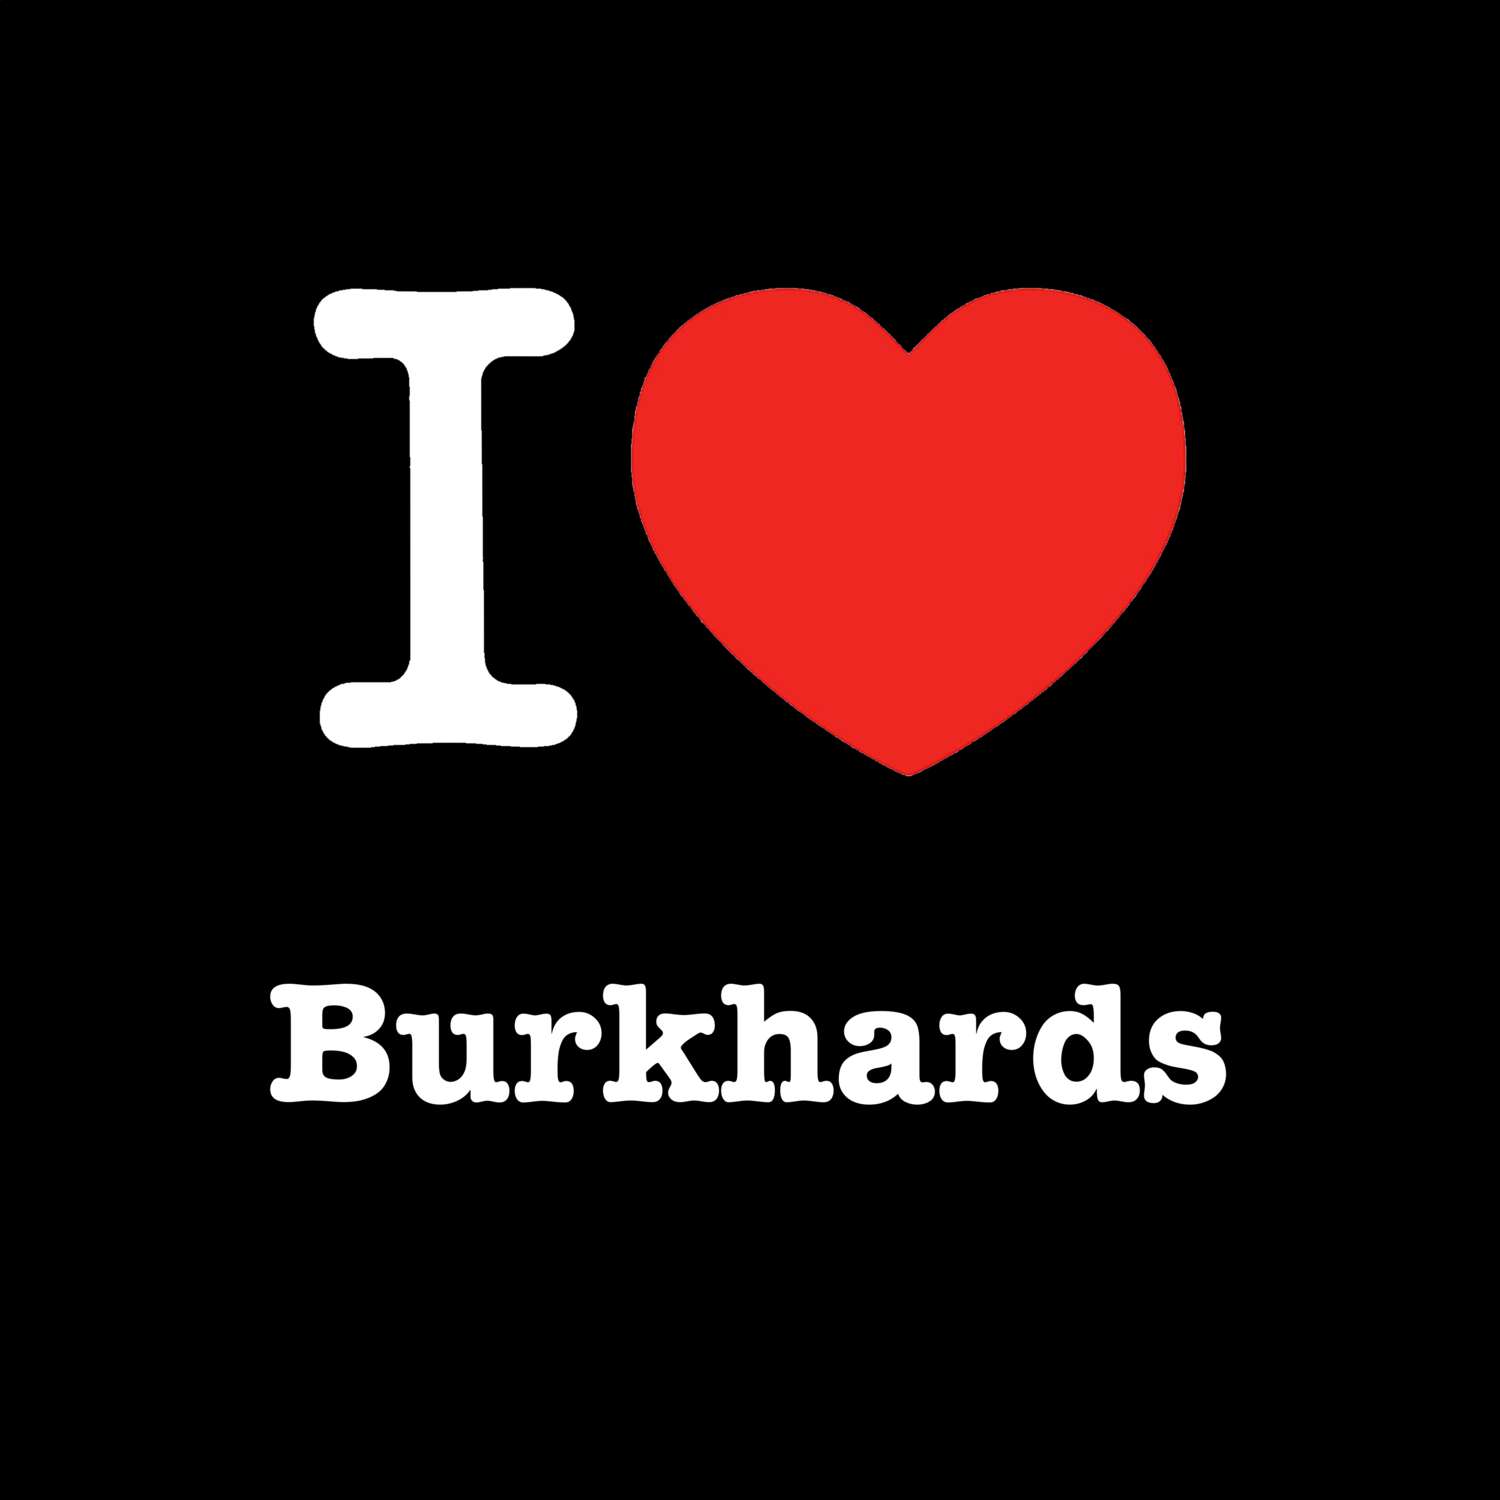 Burkhards T-Shirt »I love«